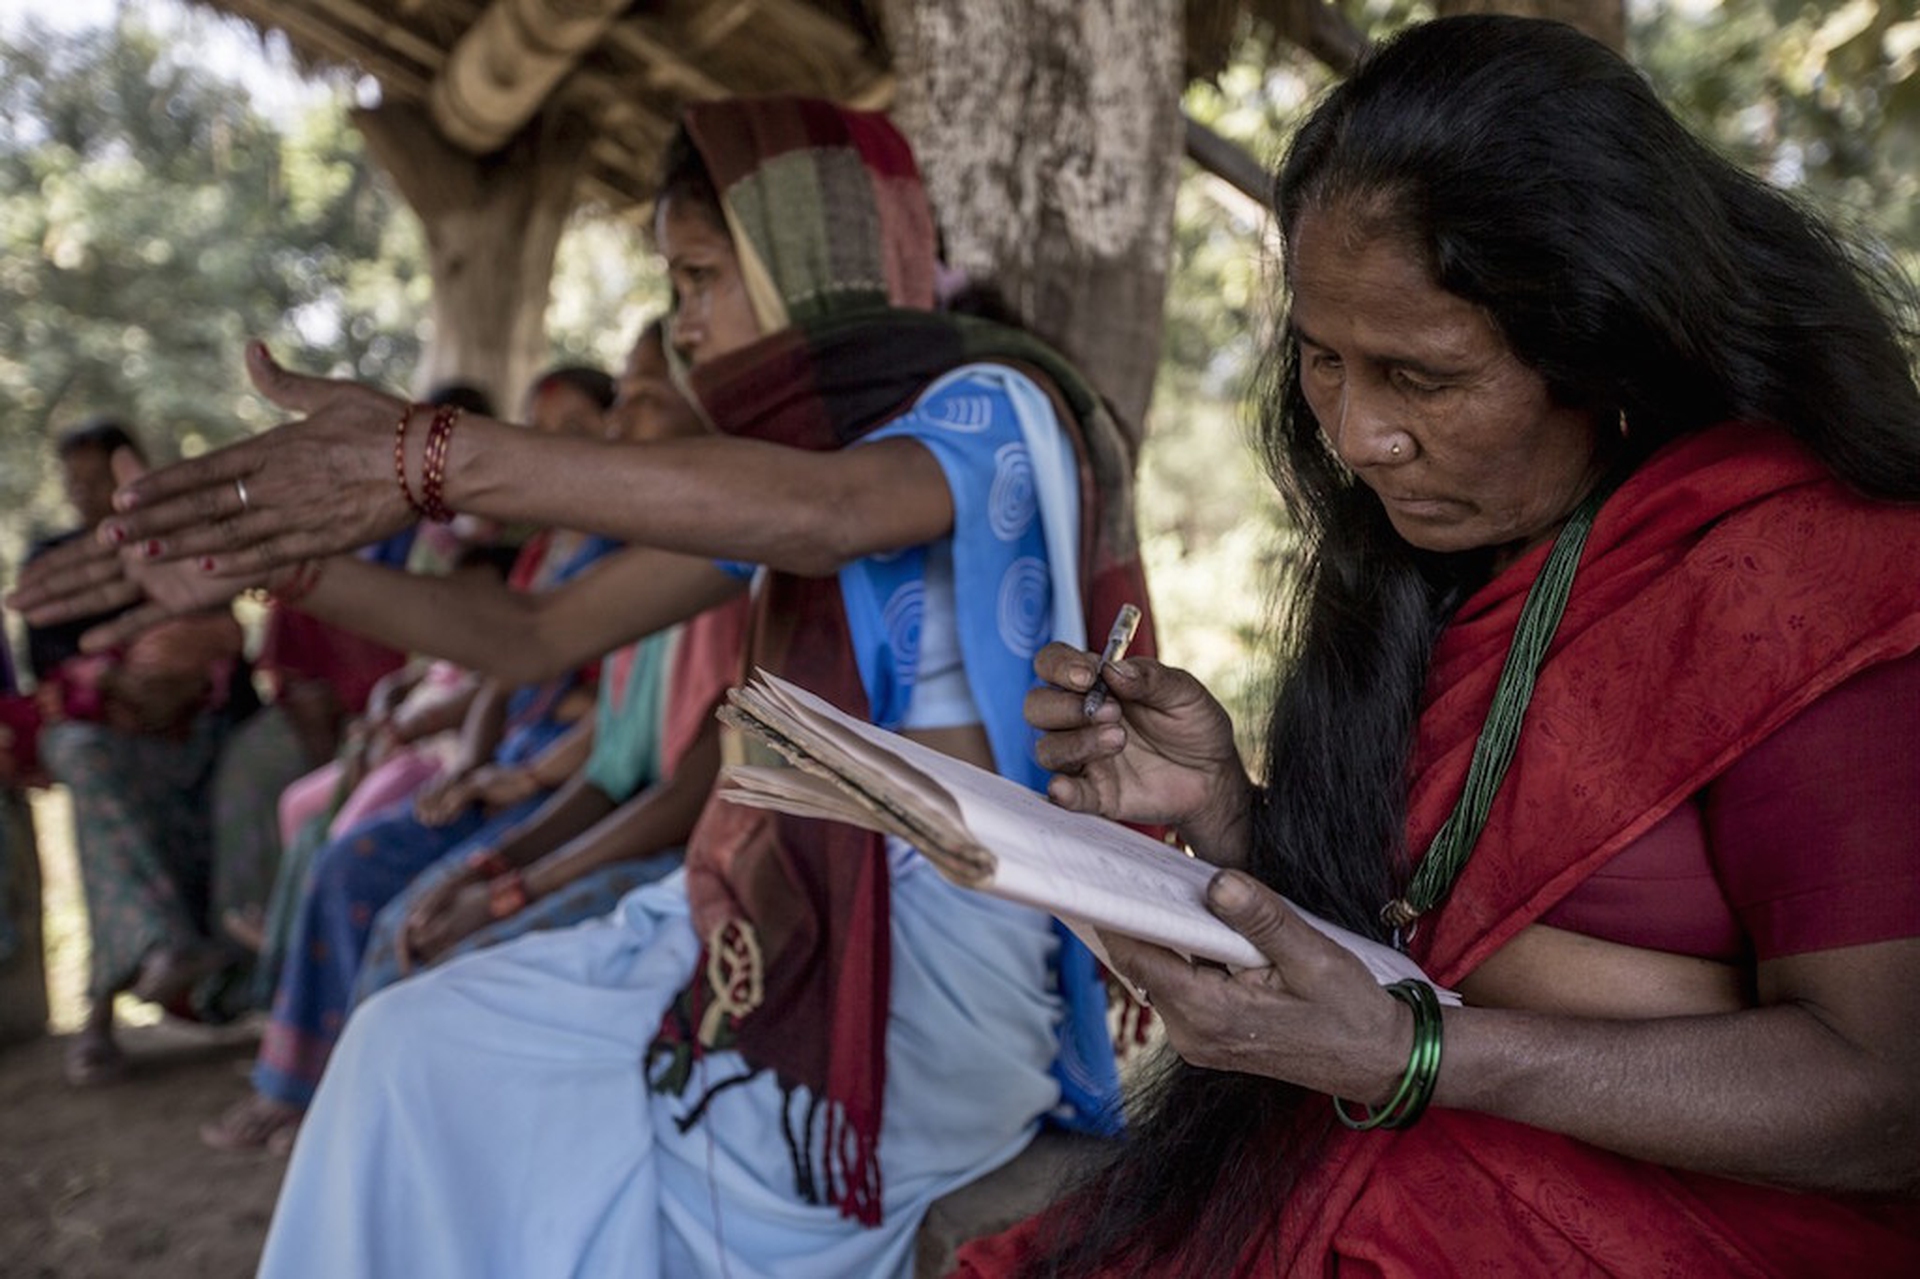 Le Donne A Guardia Della Biodiversità In Nepal Le Foto In Un Reportage